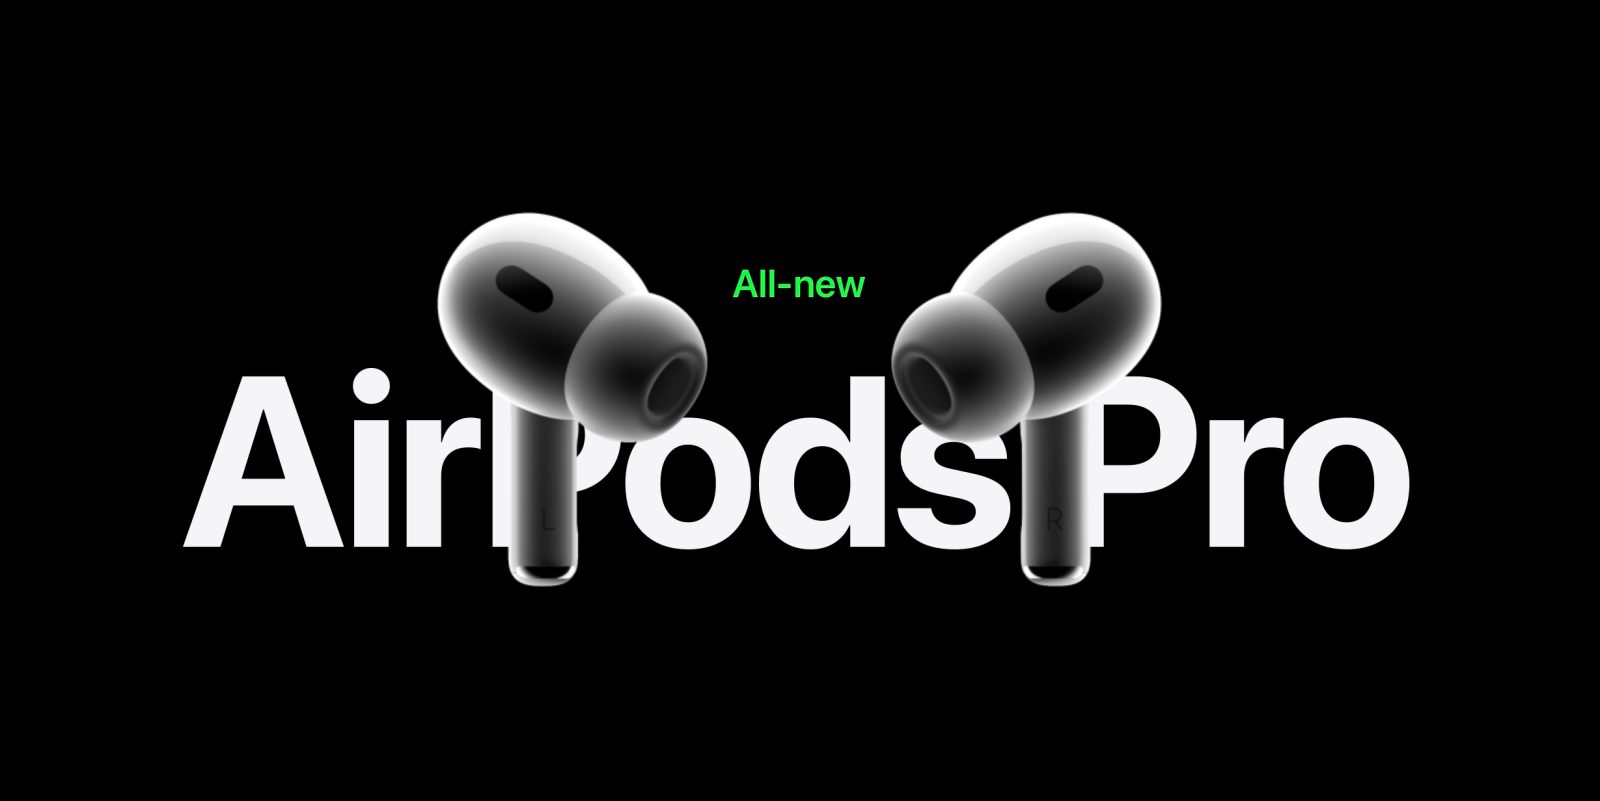 landmænd Jordbær fedt nok AirPods Pro 2 reviews: Improved sound quality, new tweaks